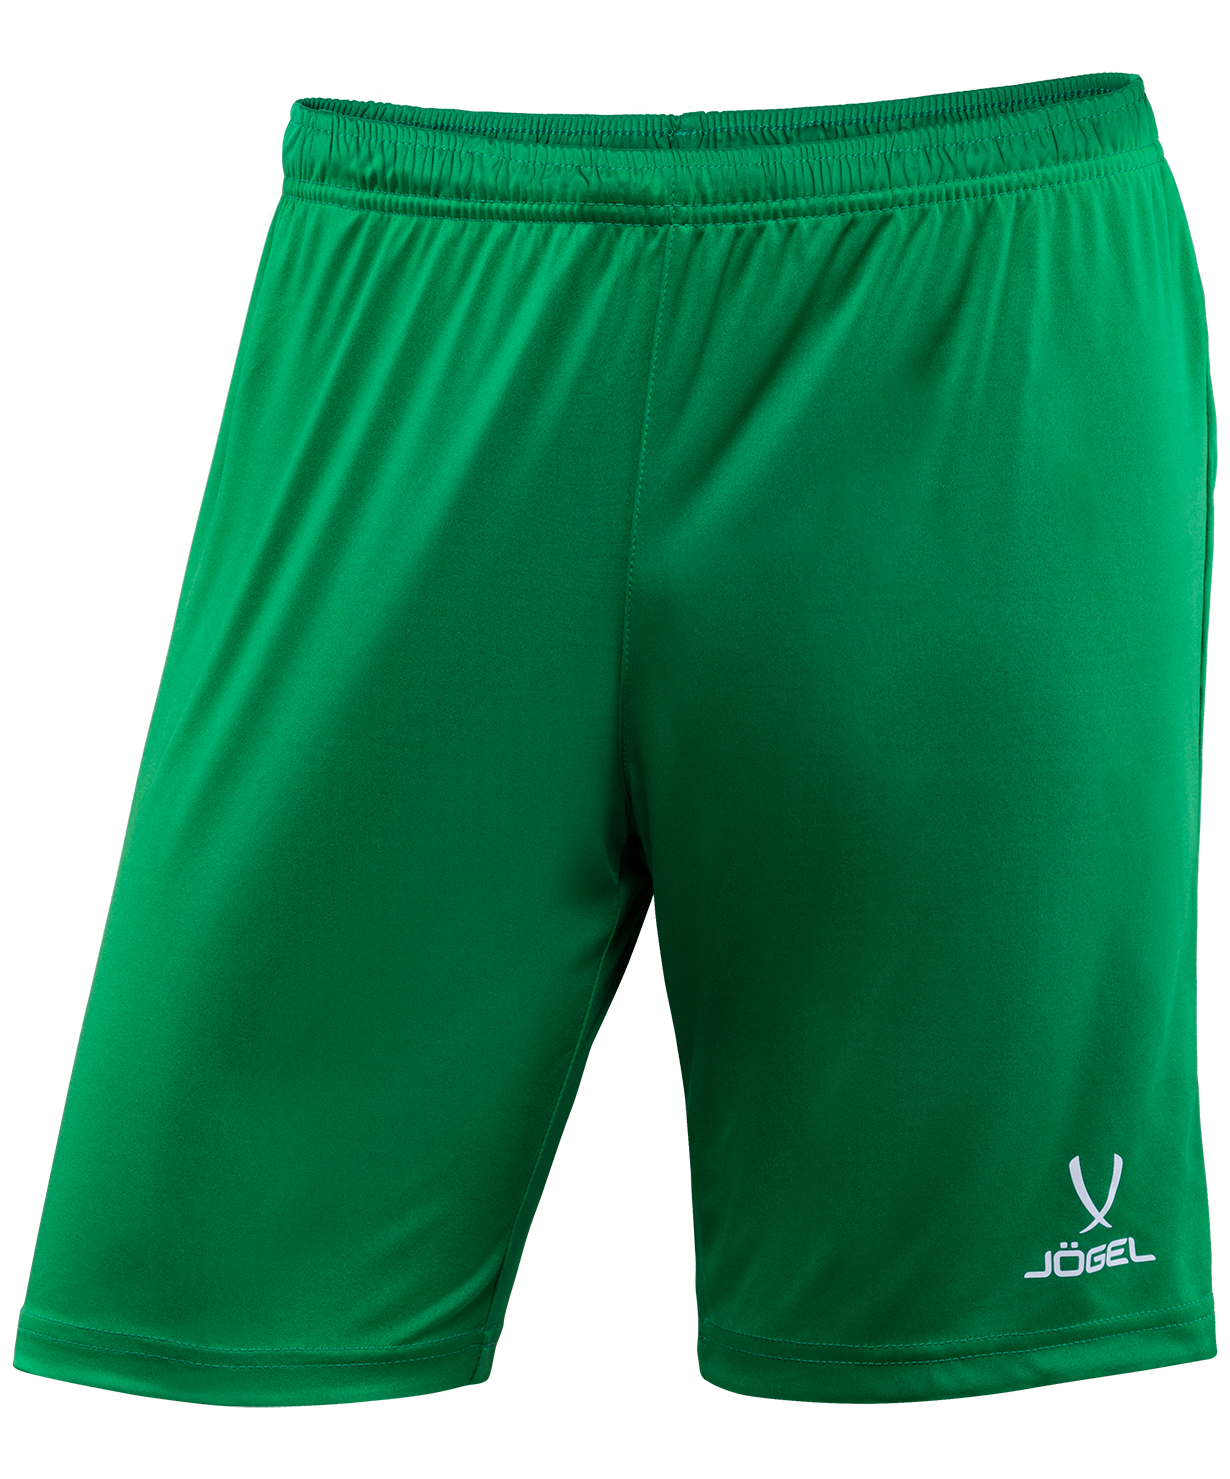 Шорты футбольные Jogel CAMP зеленый/белый, р. 122 шорты баскетбольные jogel camp basic зеленый